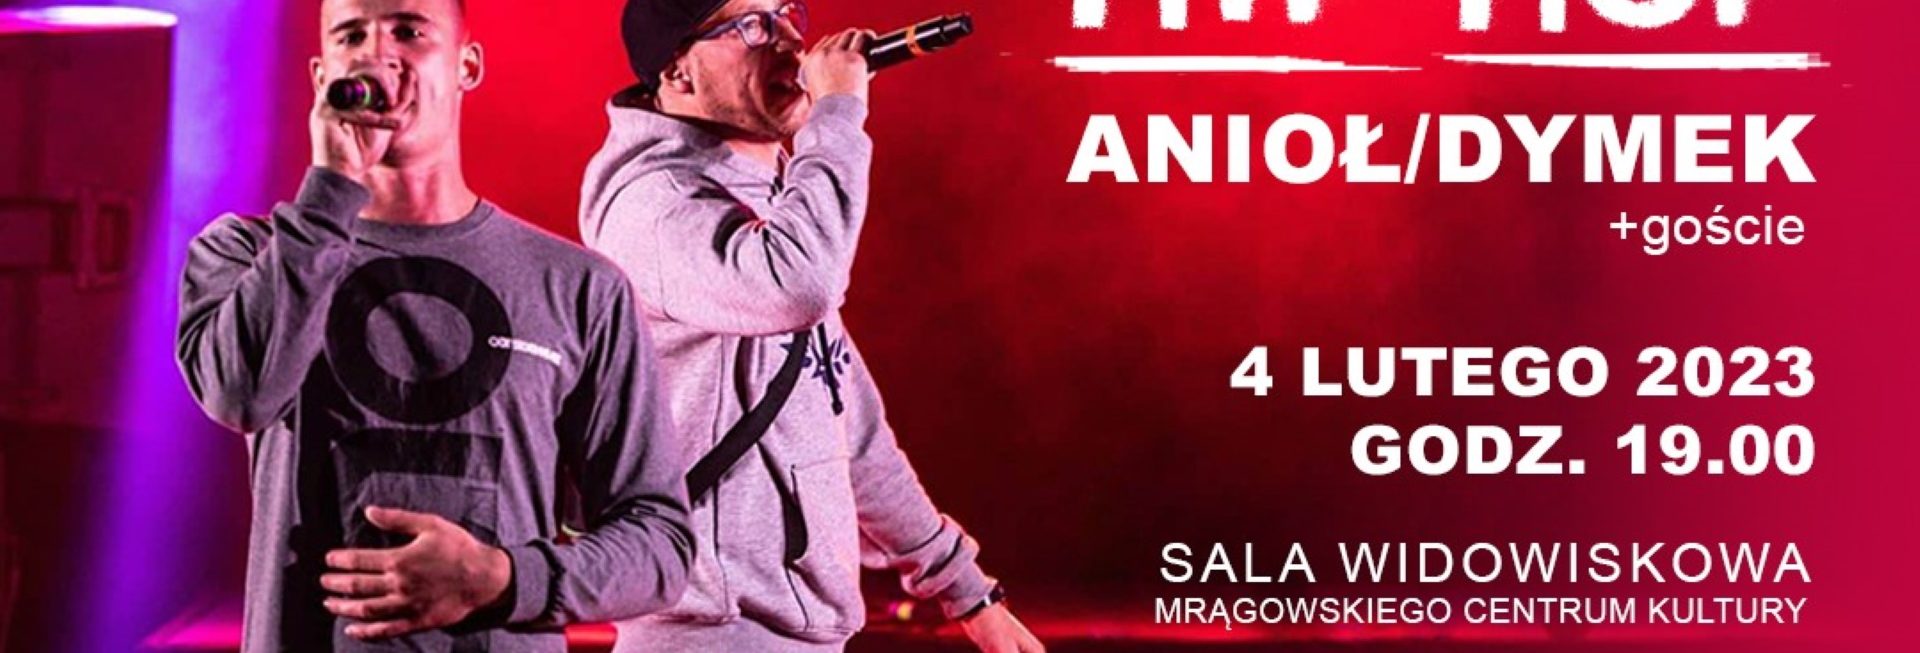 Plakat zapraszający w sobotę 4 lutego 2023 r. do Mrągowa na koncert Hip-Hop Anioł/Dymek + goście Mrągowo 2023.